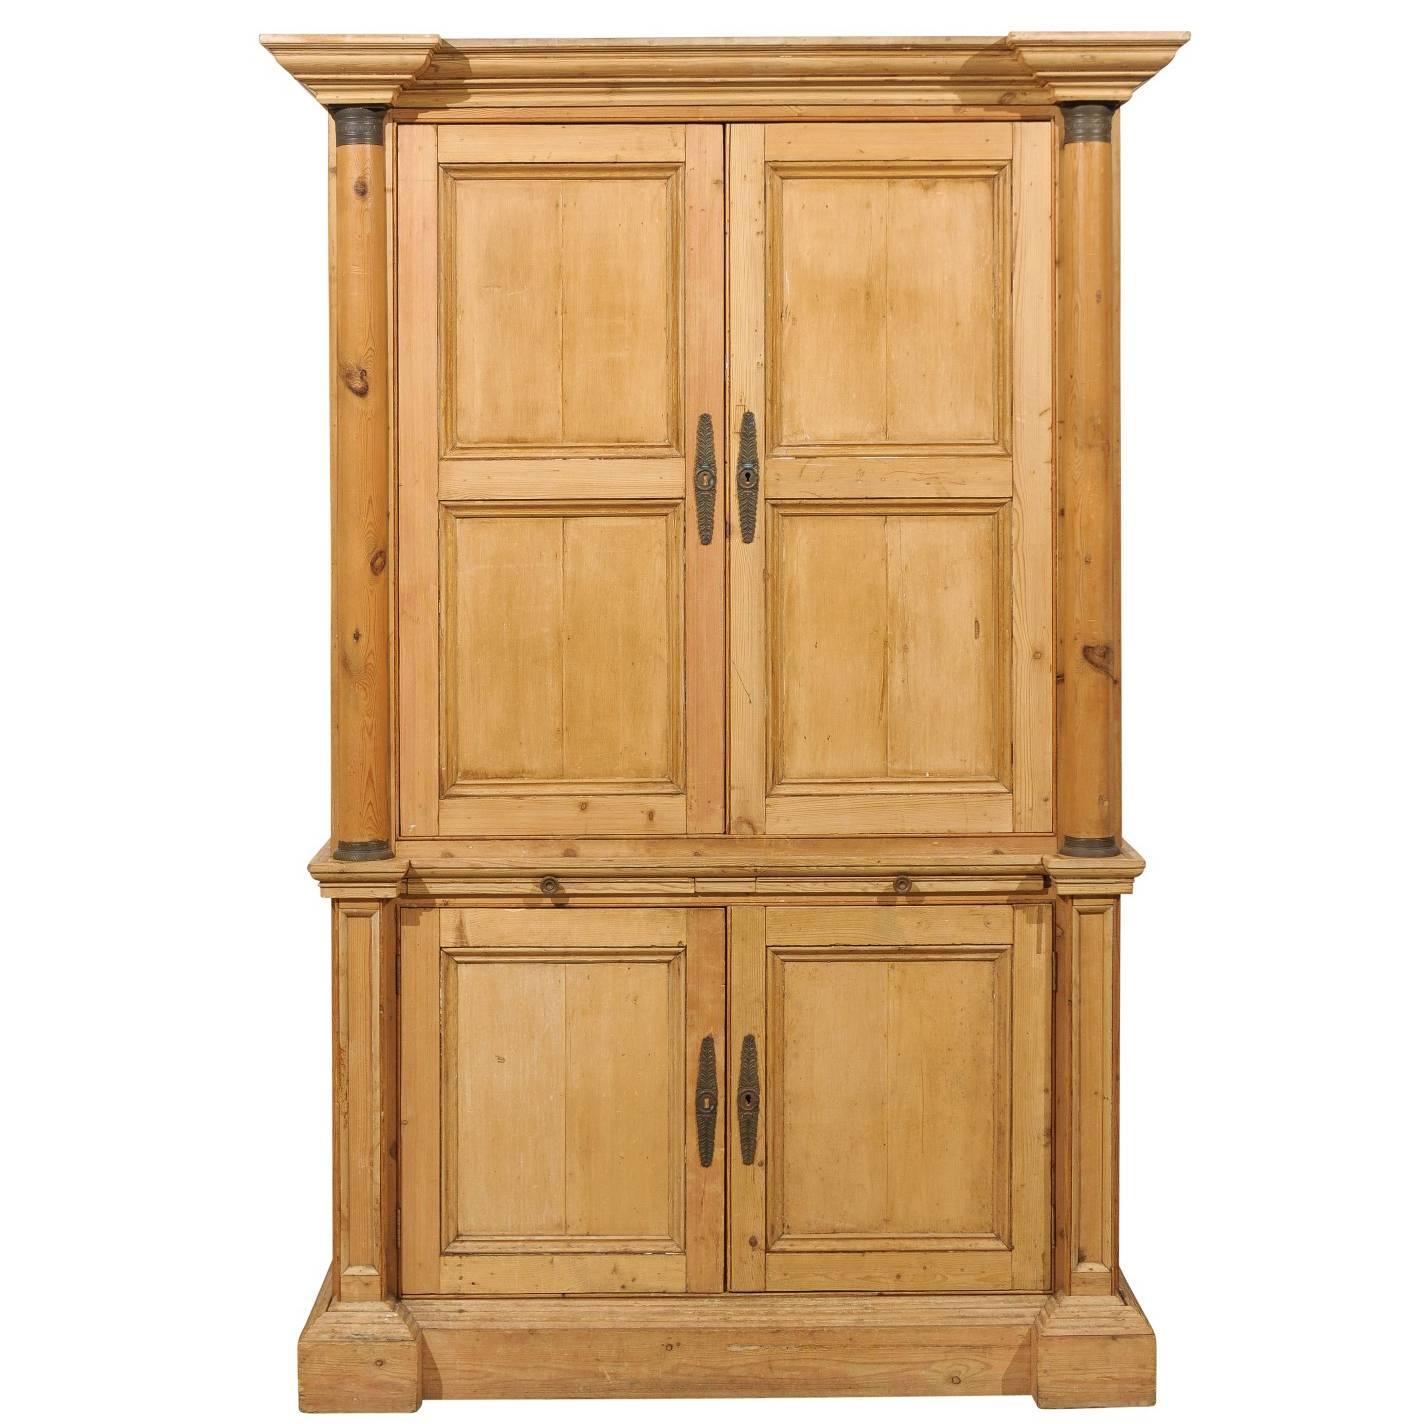 7' ft tall English Four-Door Vintage Cabinet with Adjustable Shelves and Drawers (Cabinet vintage anglais à quatre portes avec étagères et tiroirs réglables)